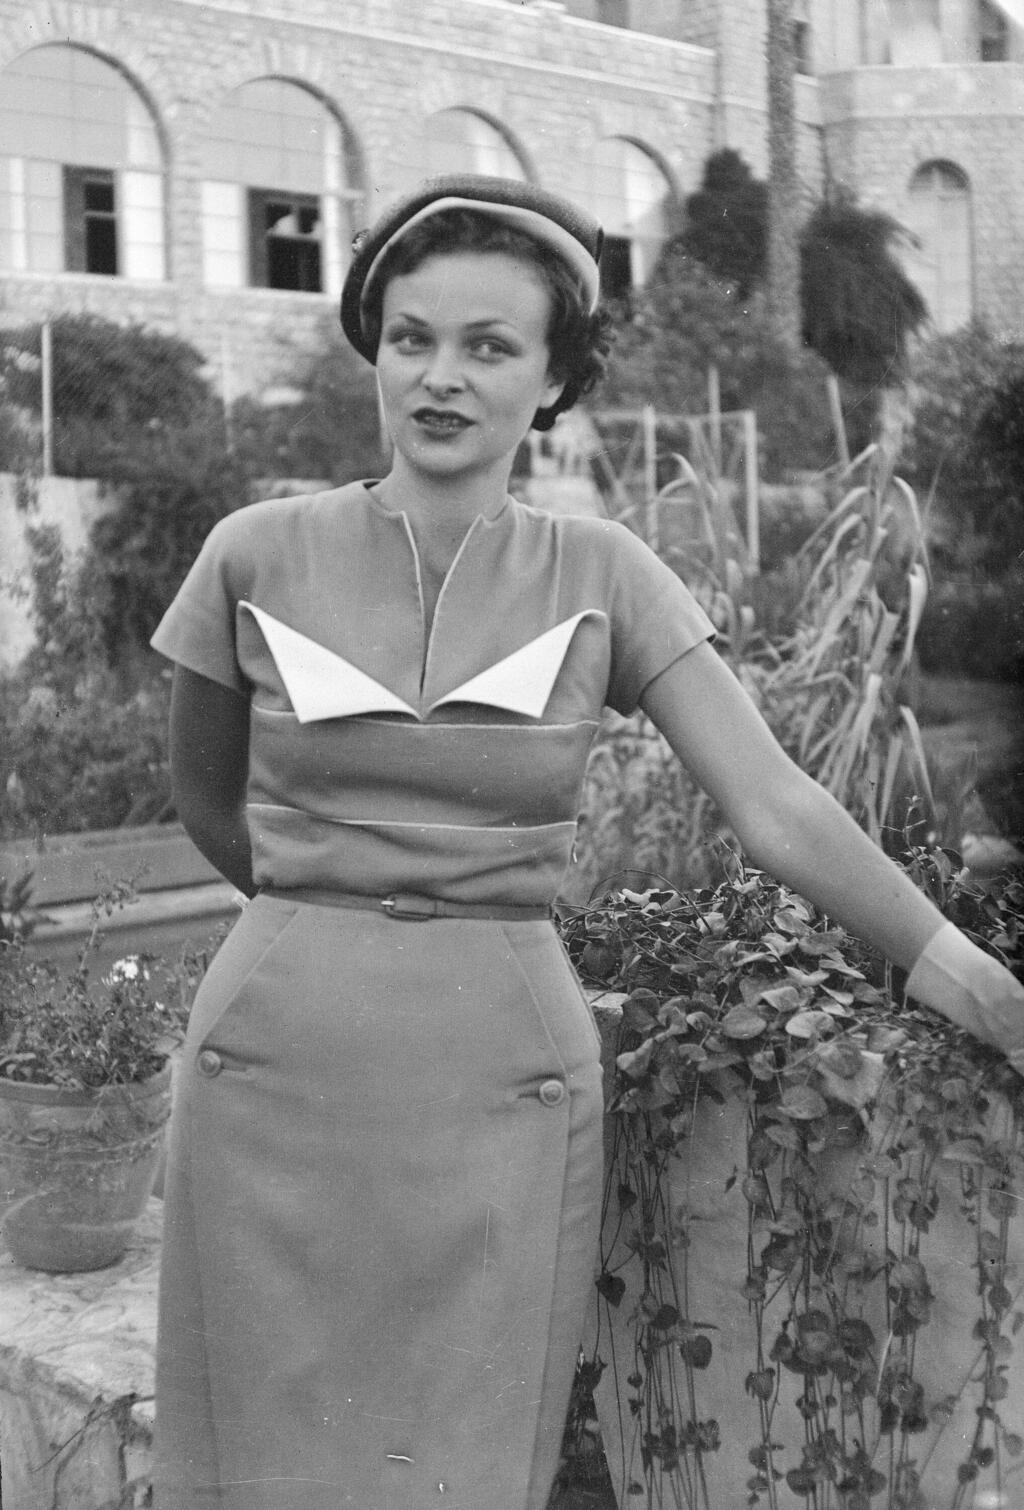 תצוגת אופנה במלון קינג דיוויד בירושלים, 1951